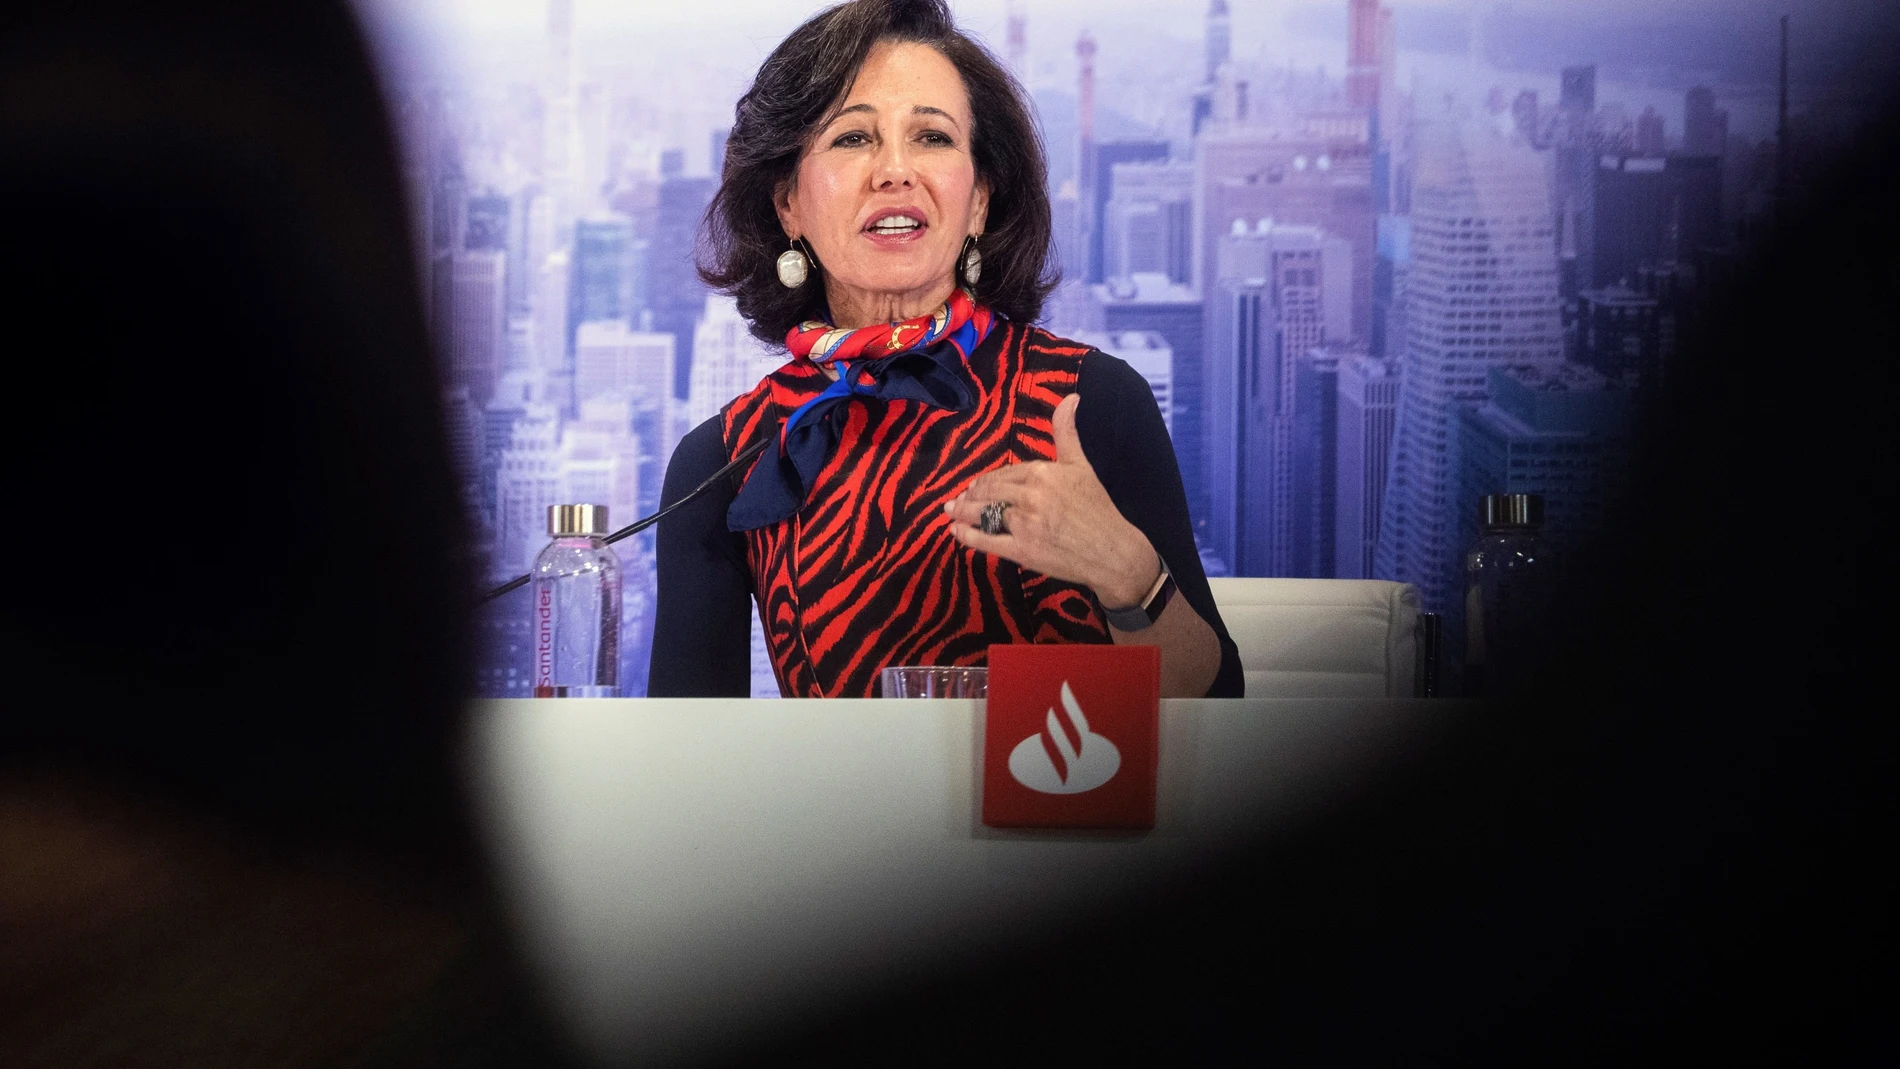 GRAF691. BOADILLA (MADRID), 29/01/2020.- La presidenta del Banco Santander, Ana Patricia Botín, durante la presentación de resultados de la entidad en 2019